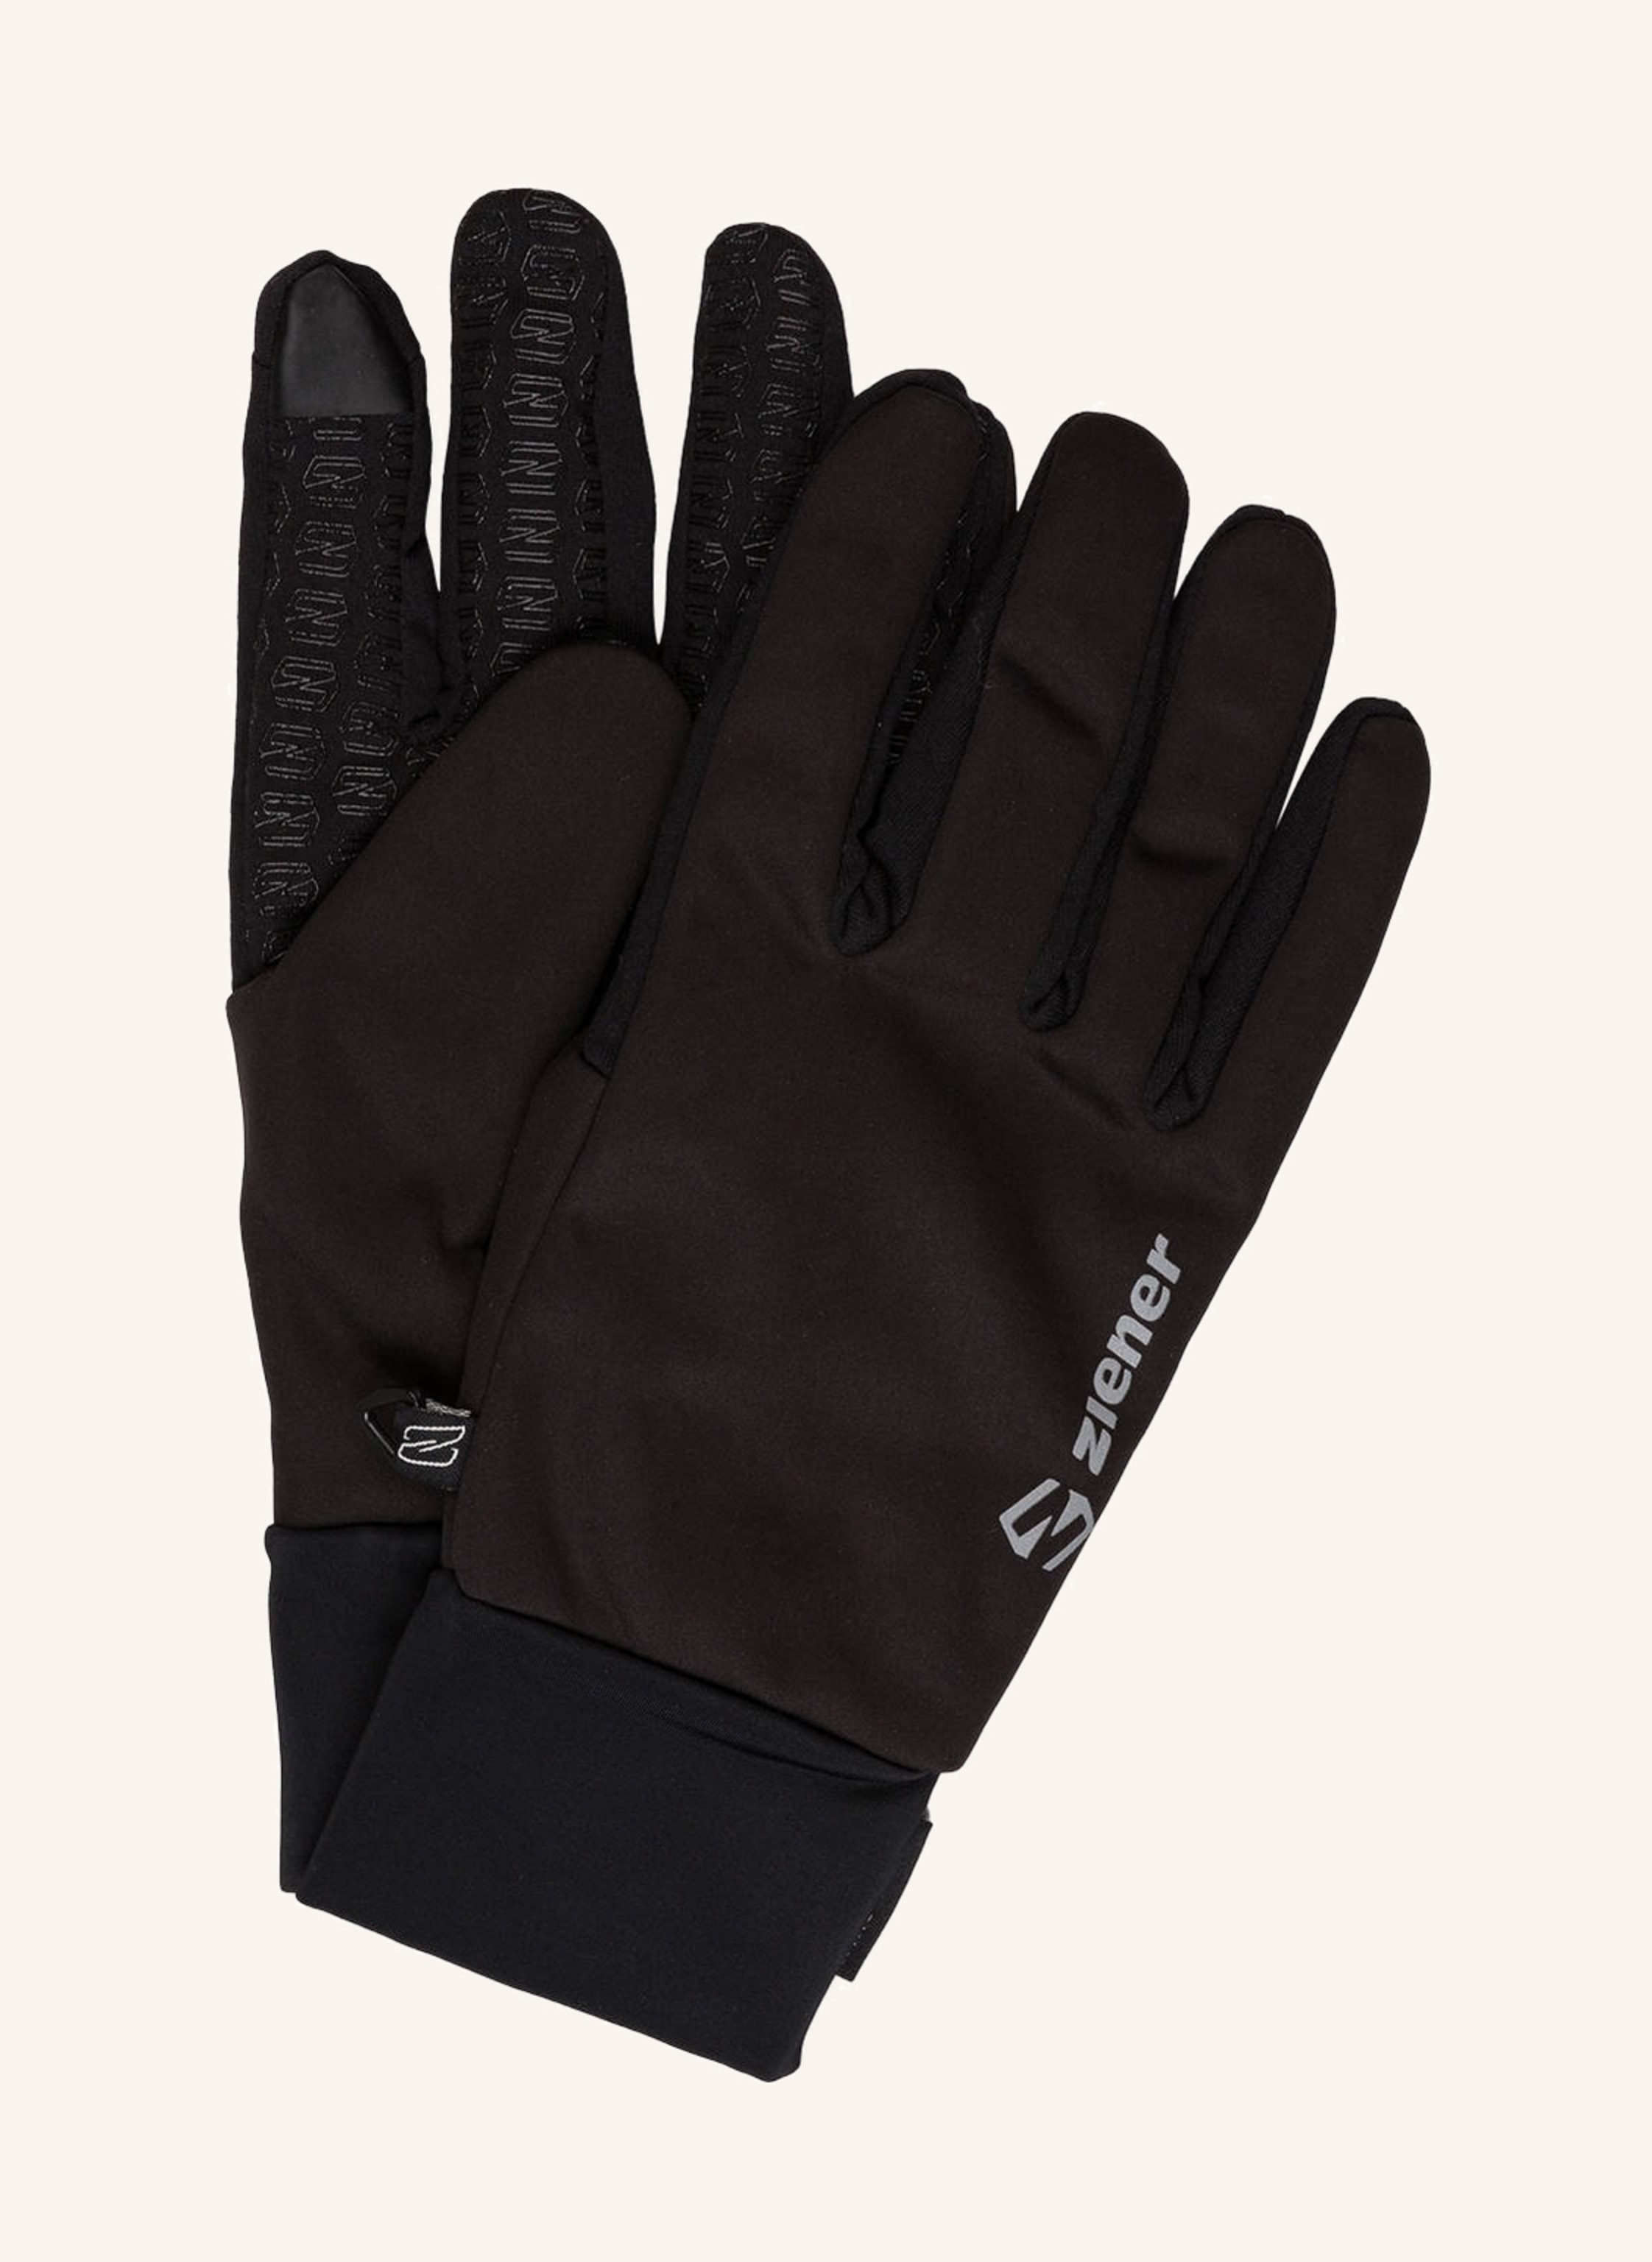 ziener IVIDURO Multisport black gloves in TOUCH